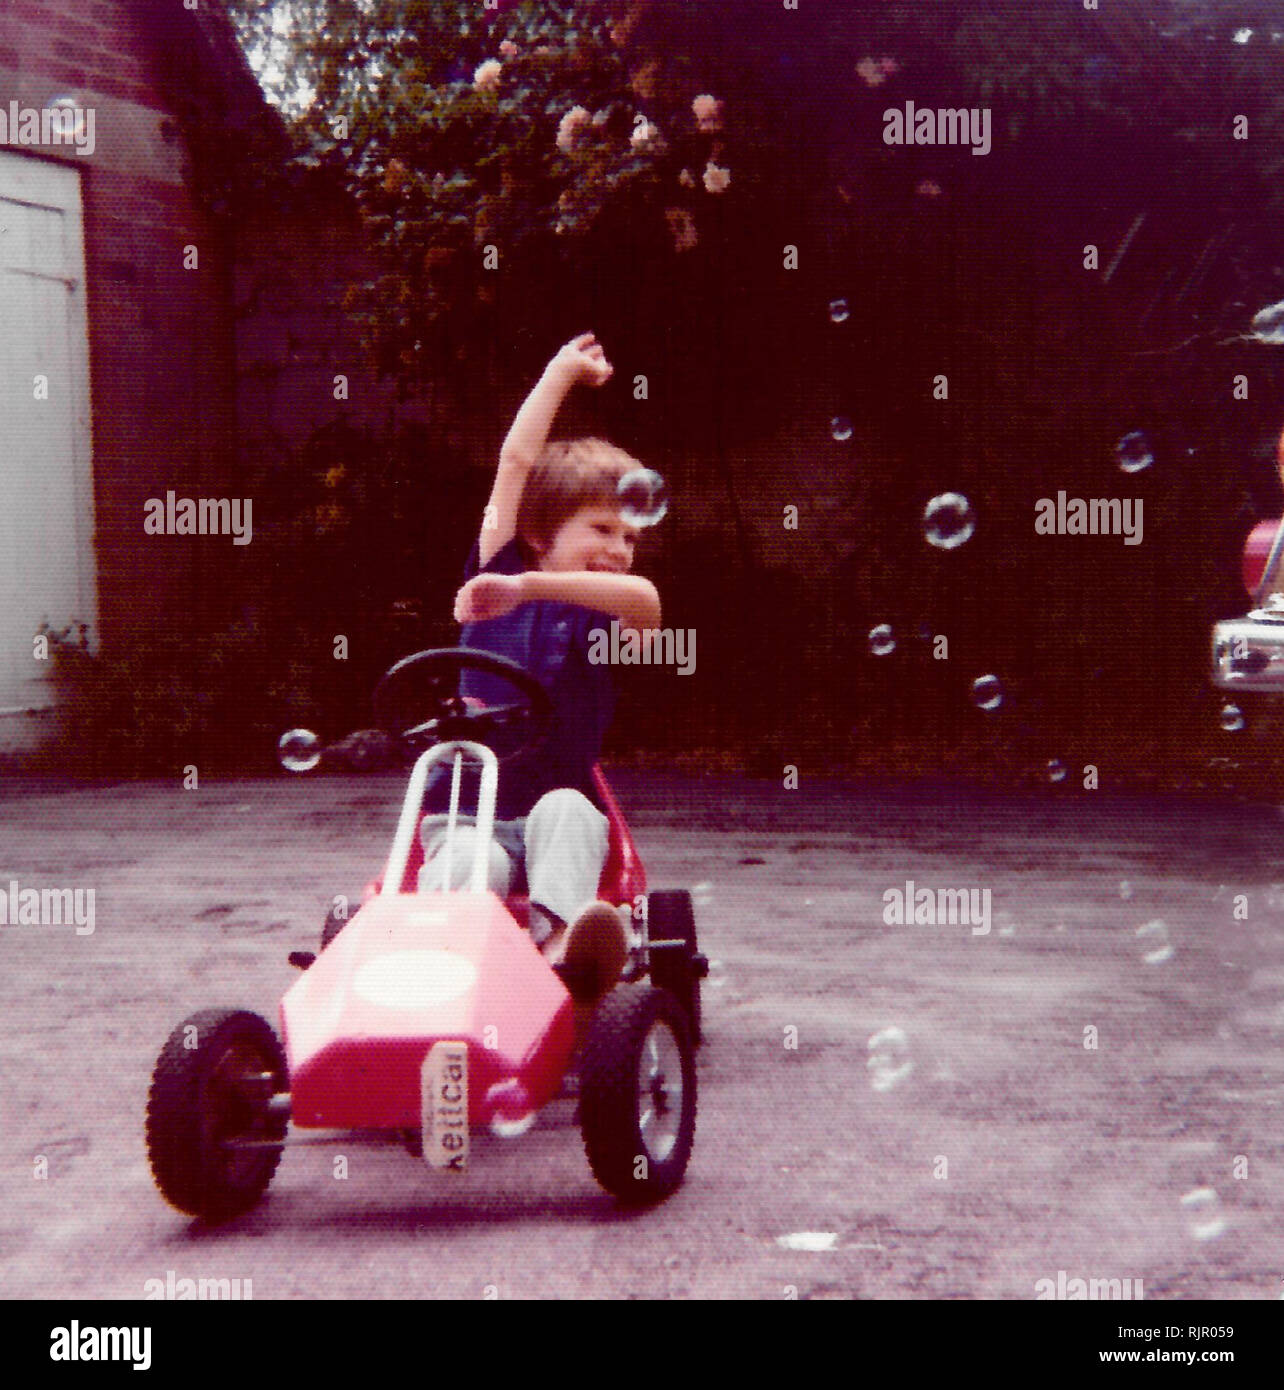 1970 - Un jeune garçon dans sa voiture à pédale zooms par bulles dans son jardin. Angleterre vers 1975. Banque D'Images